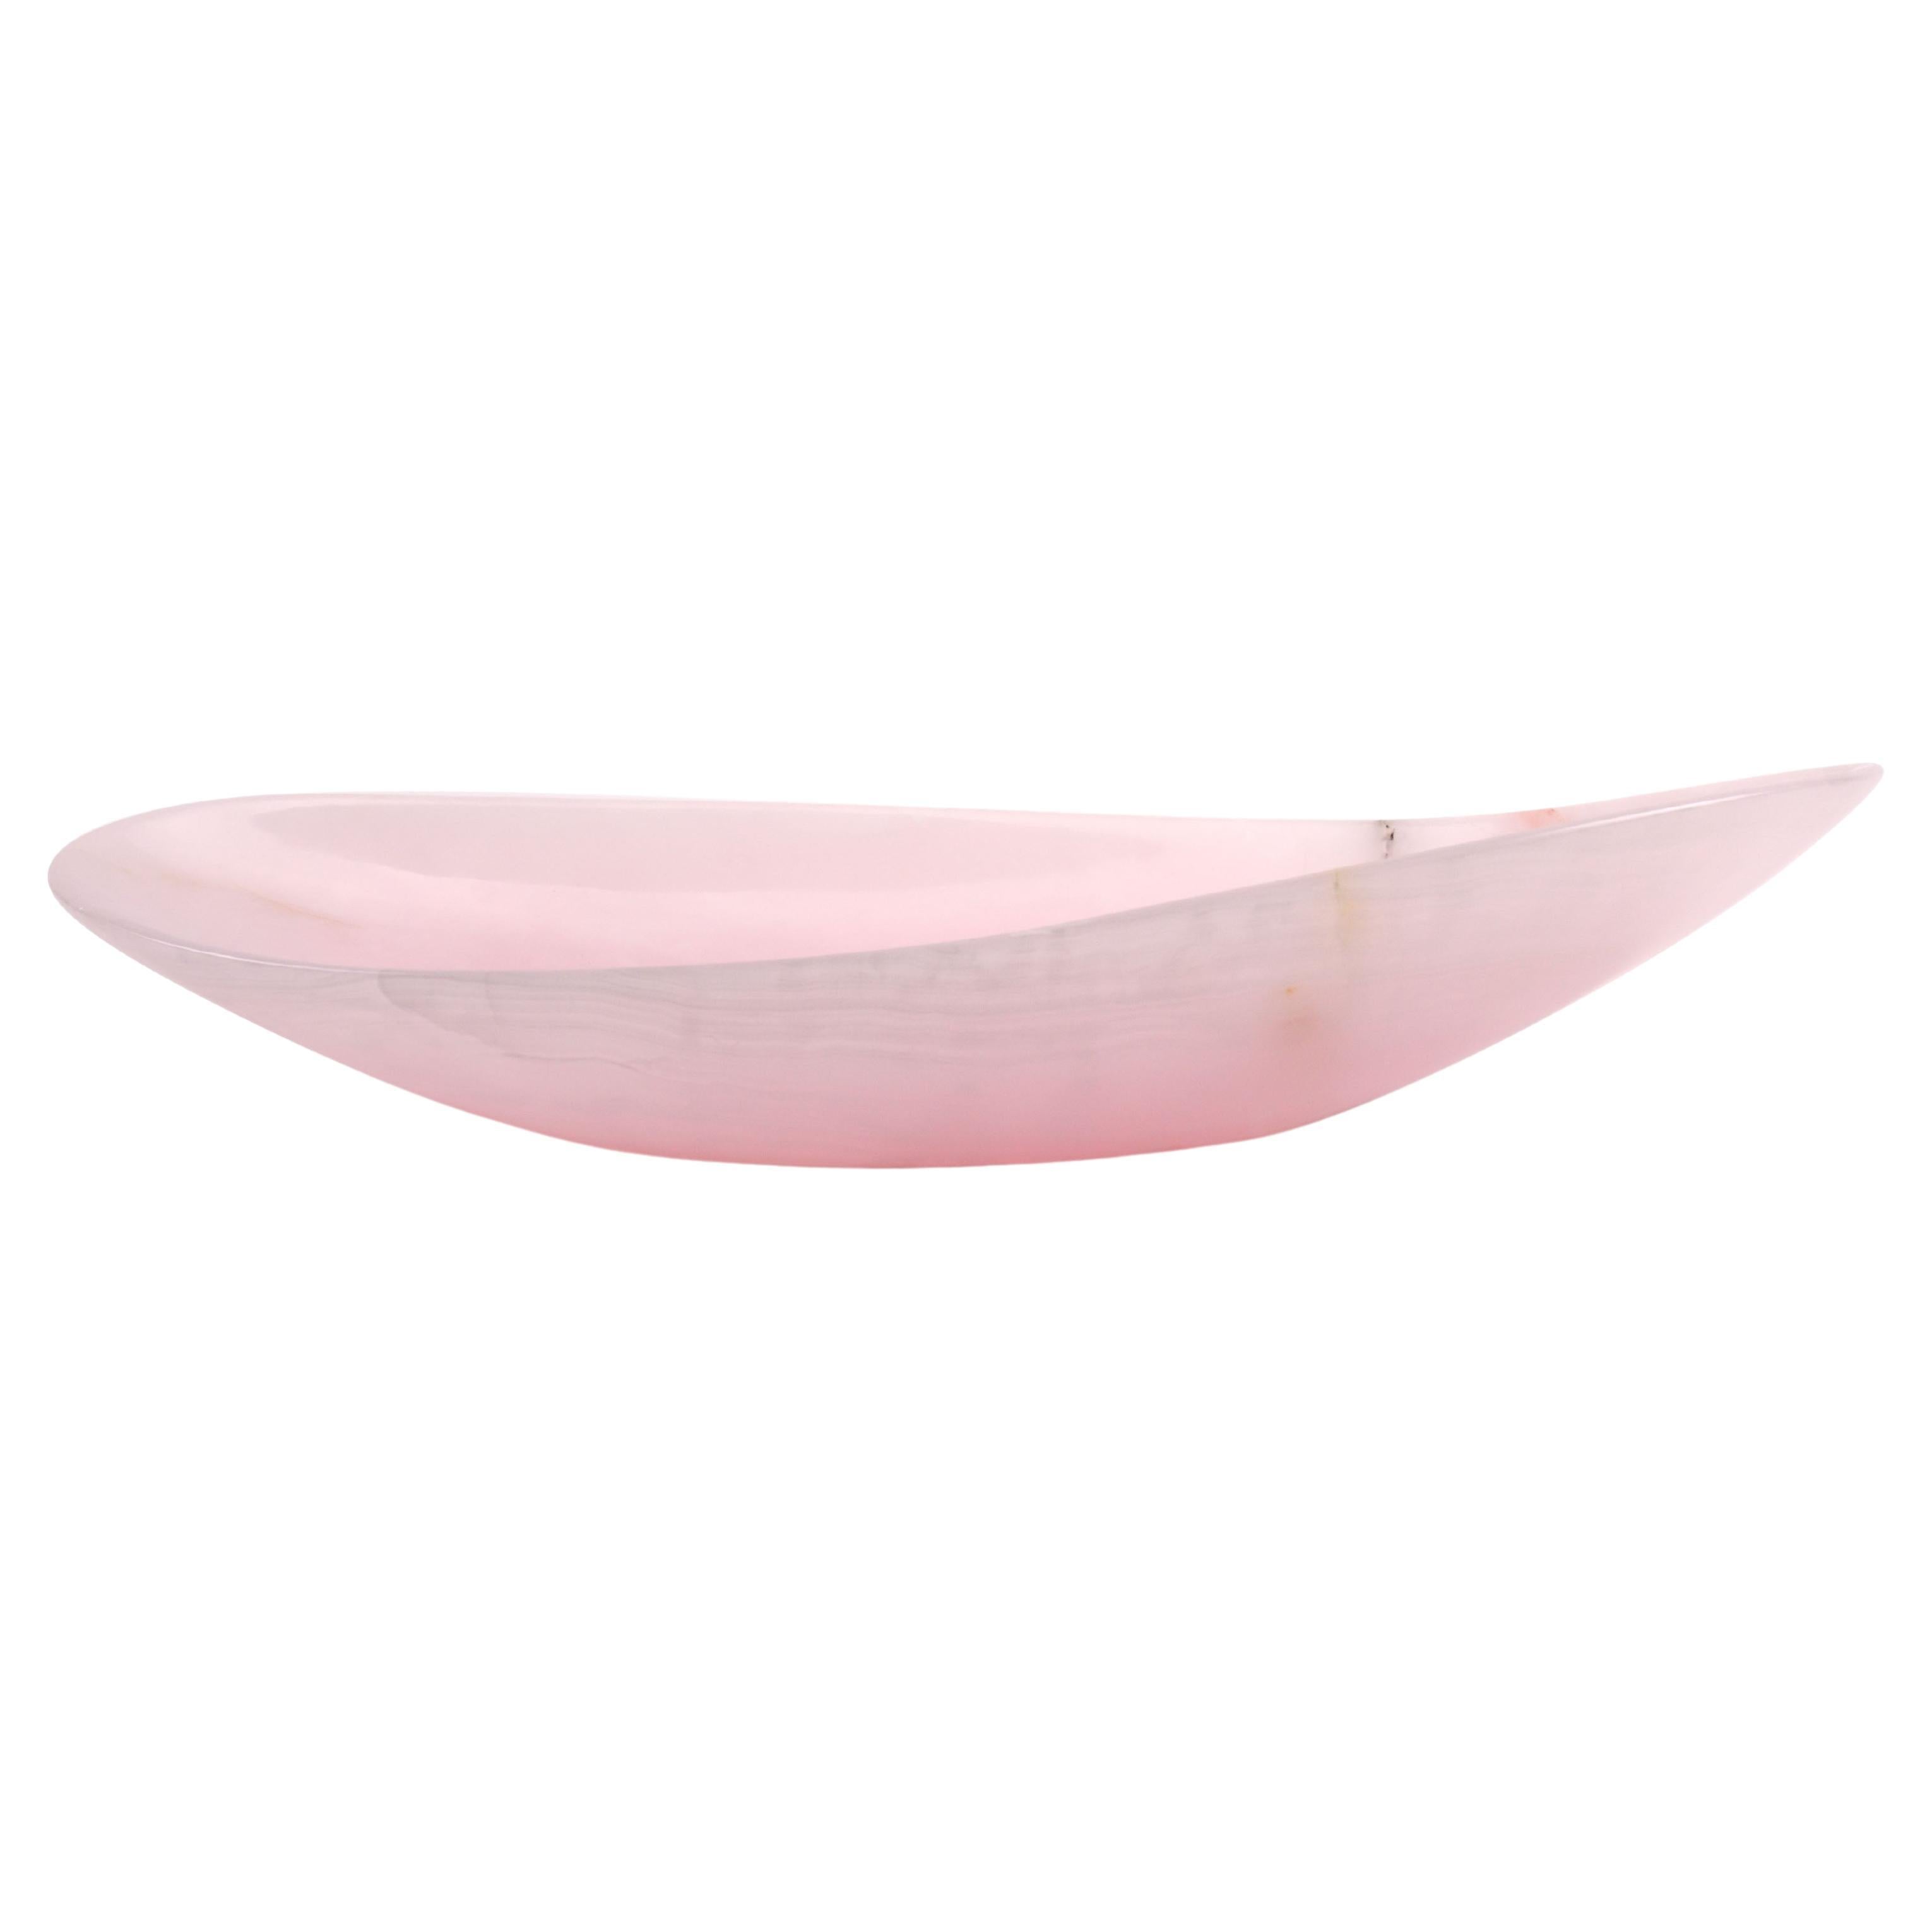 Die Schale wurde von Hand aus einem massiven Block aus rosa Onyx geformt. Die polierte Oberfläche unterstreicht die Transparenz des Onyx und macht ihn zu einem sehr wertvollen Objekt. 

Abmessungen der Schale: Medium L 45 x B 22 x H 10 cm. 
Auch